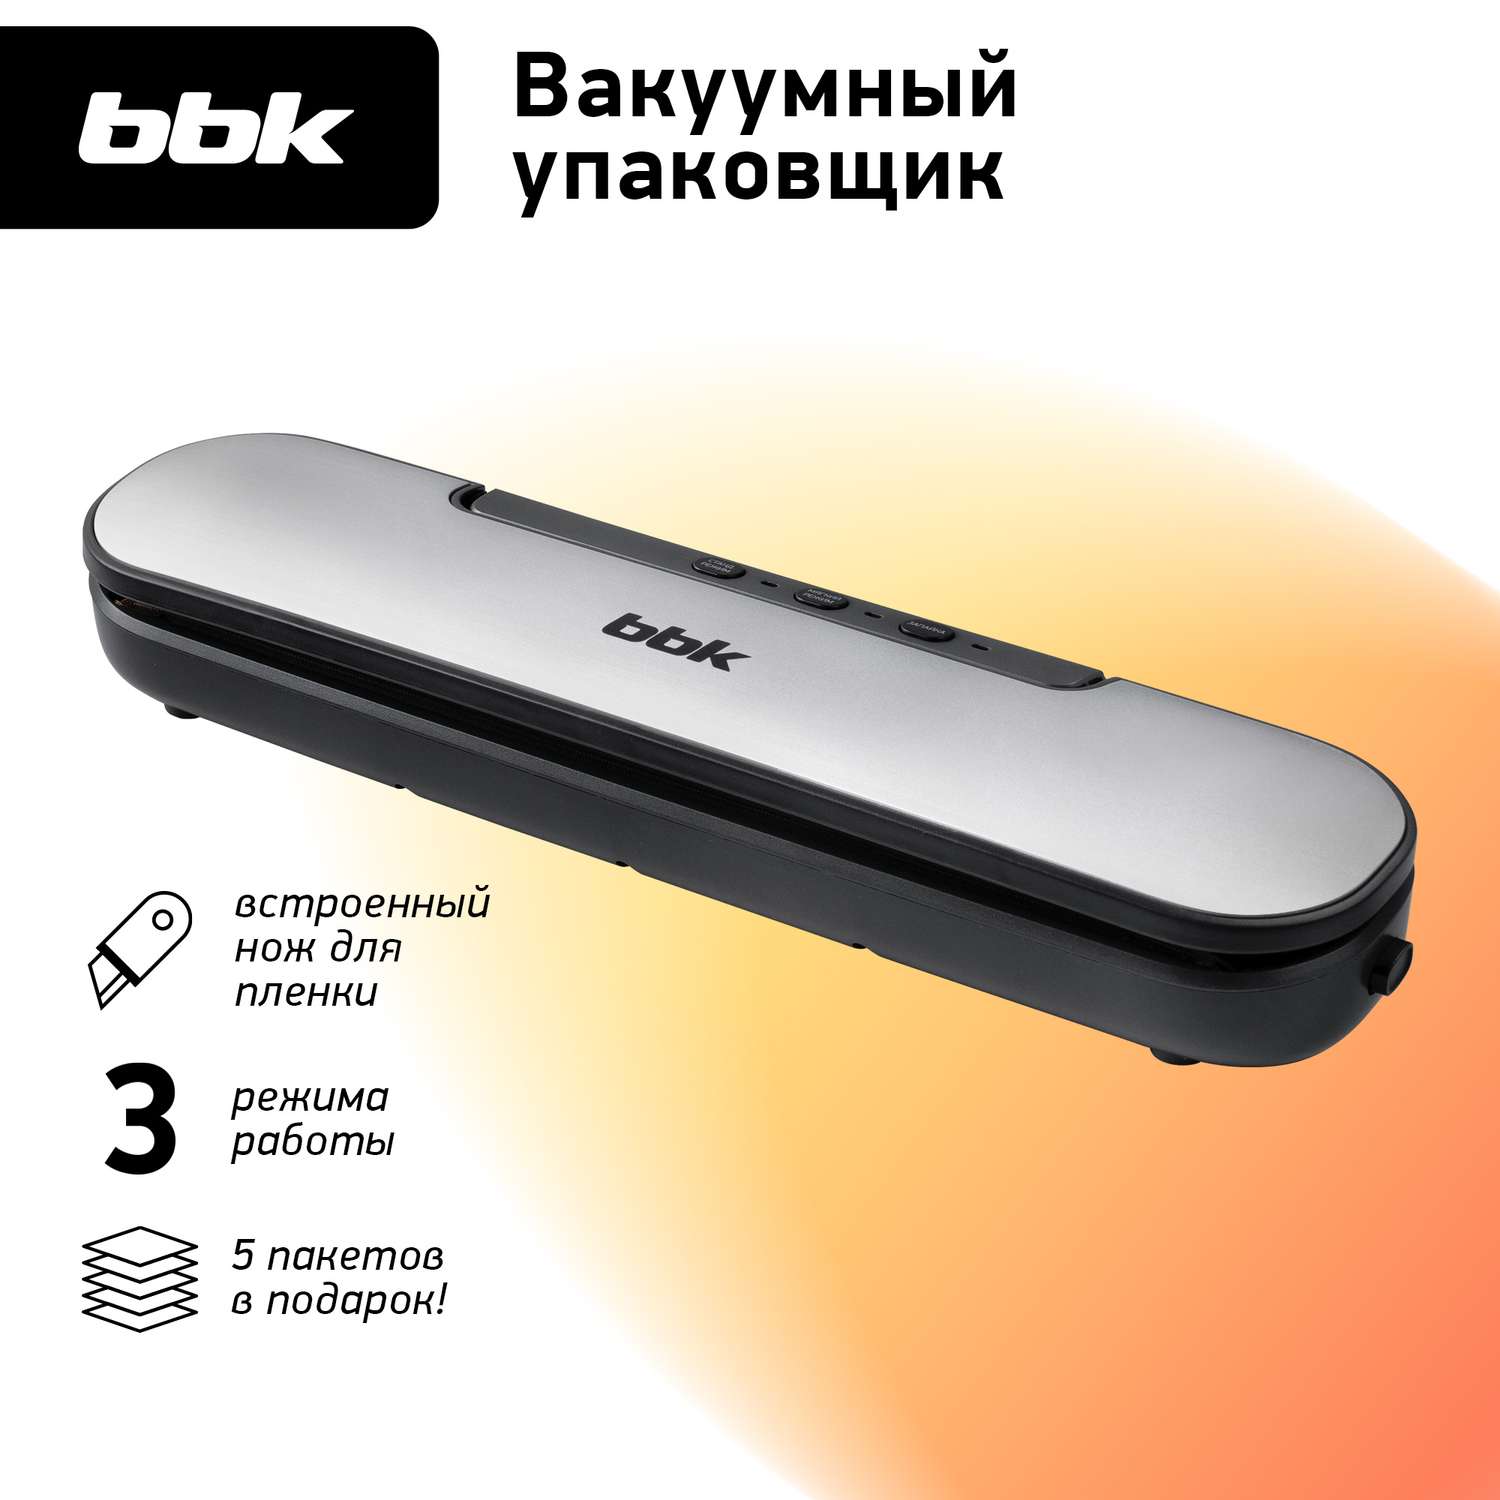 Вакуумный упаковщик BBK BVS601 серебро мощность 90 Вт электронное управление - фото 1